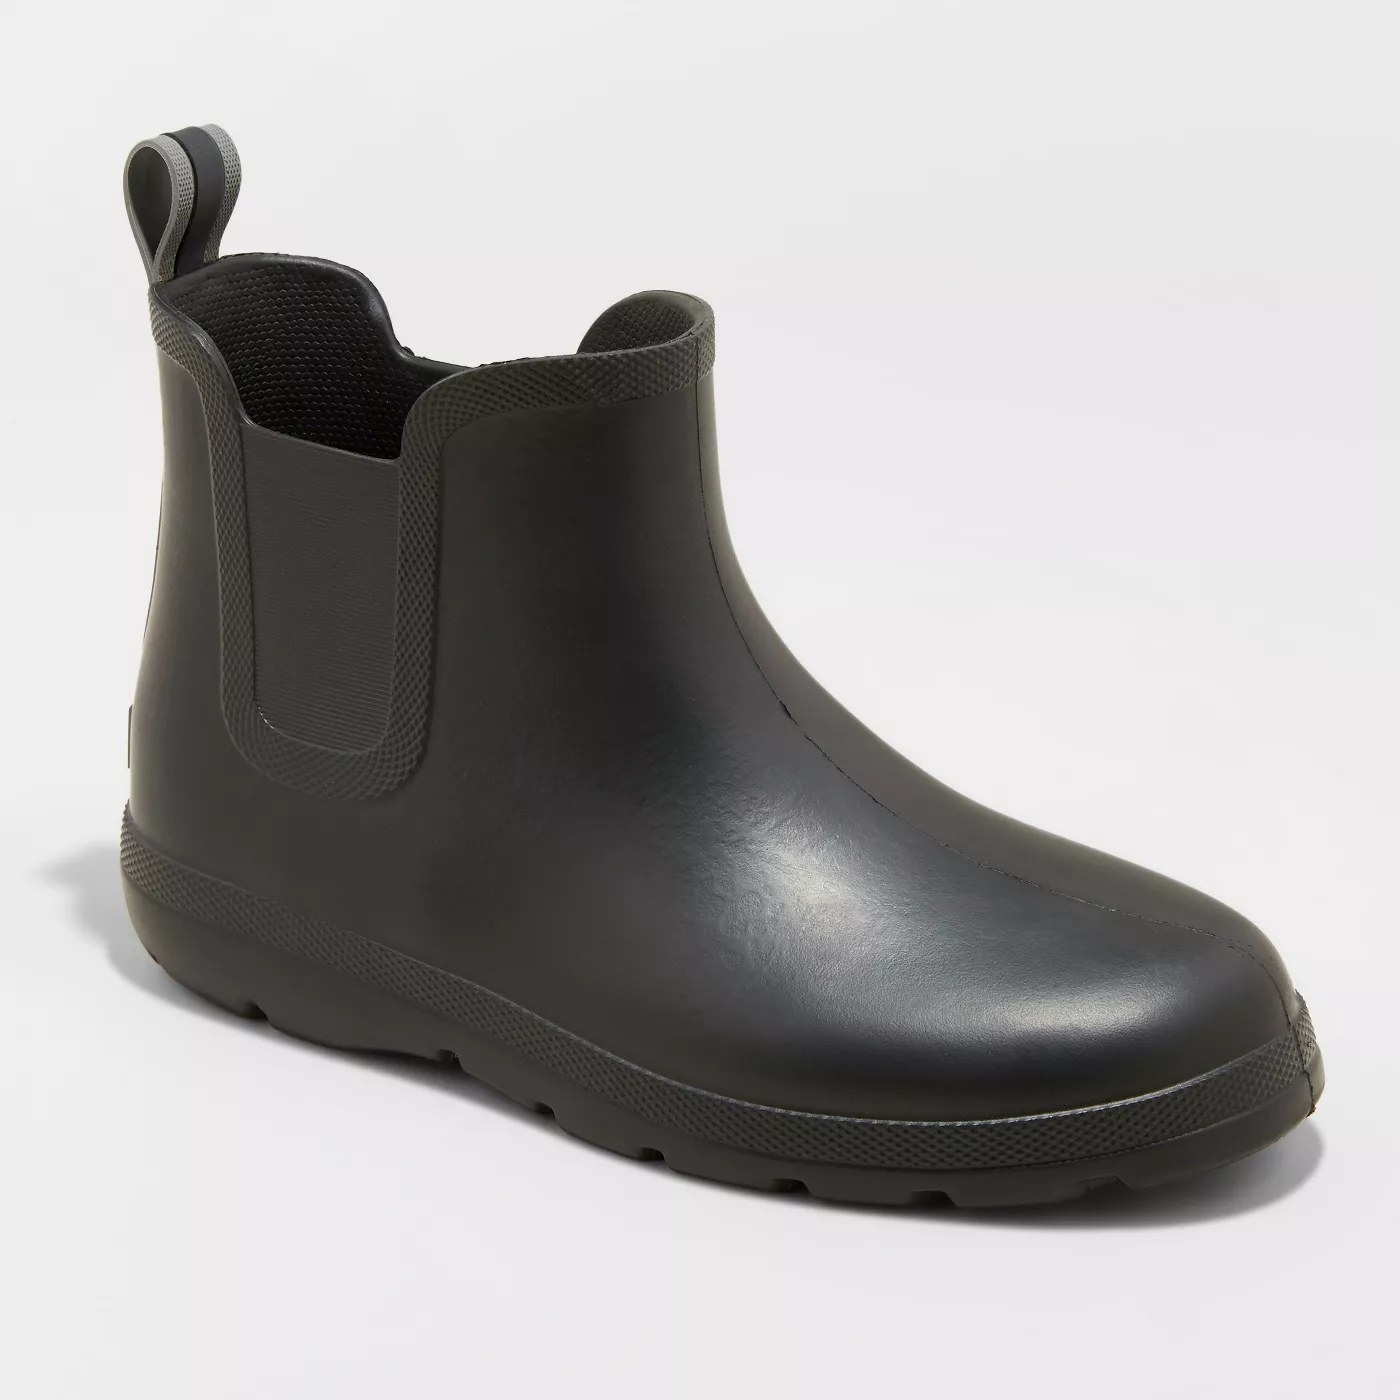 A pair of black rain boots